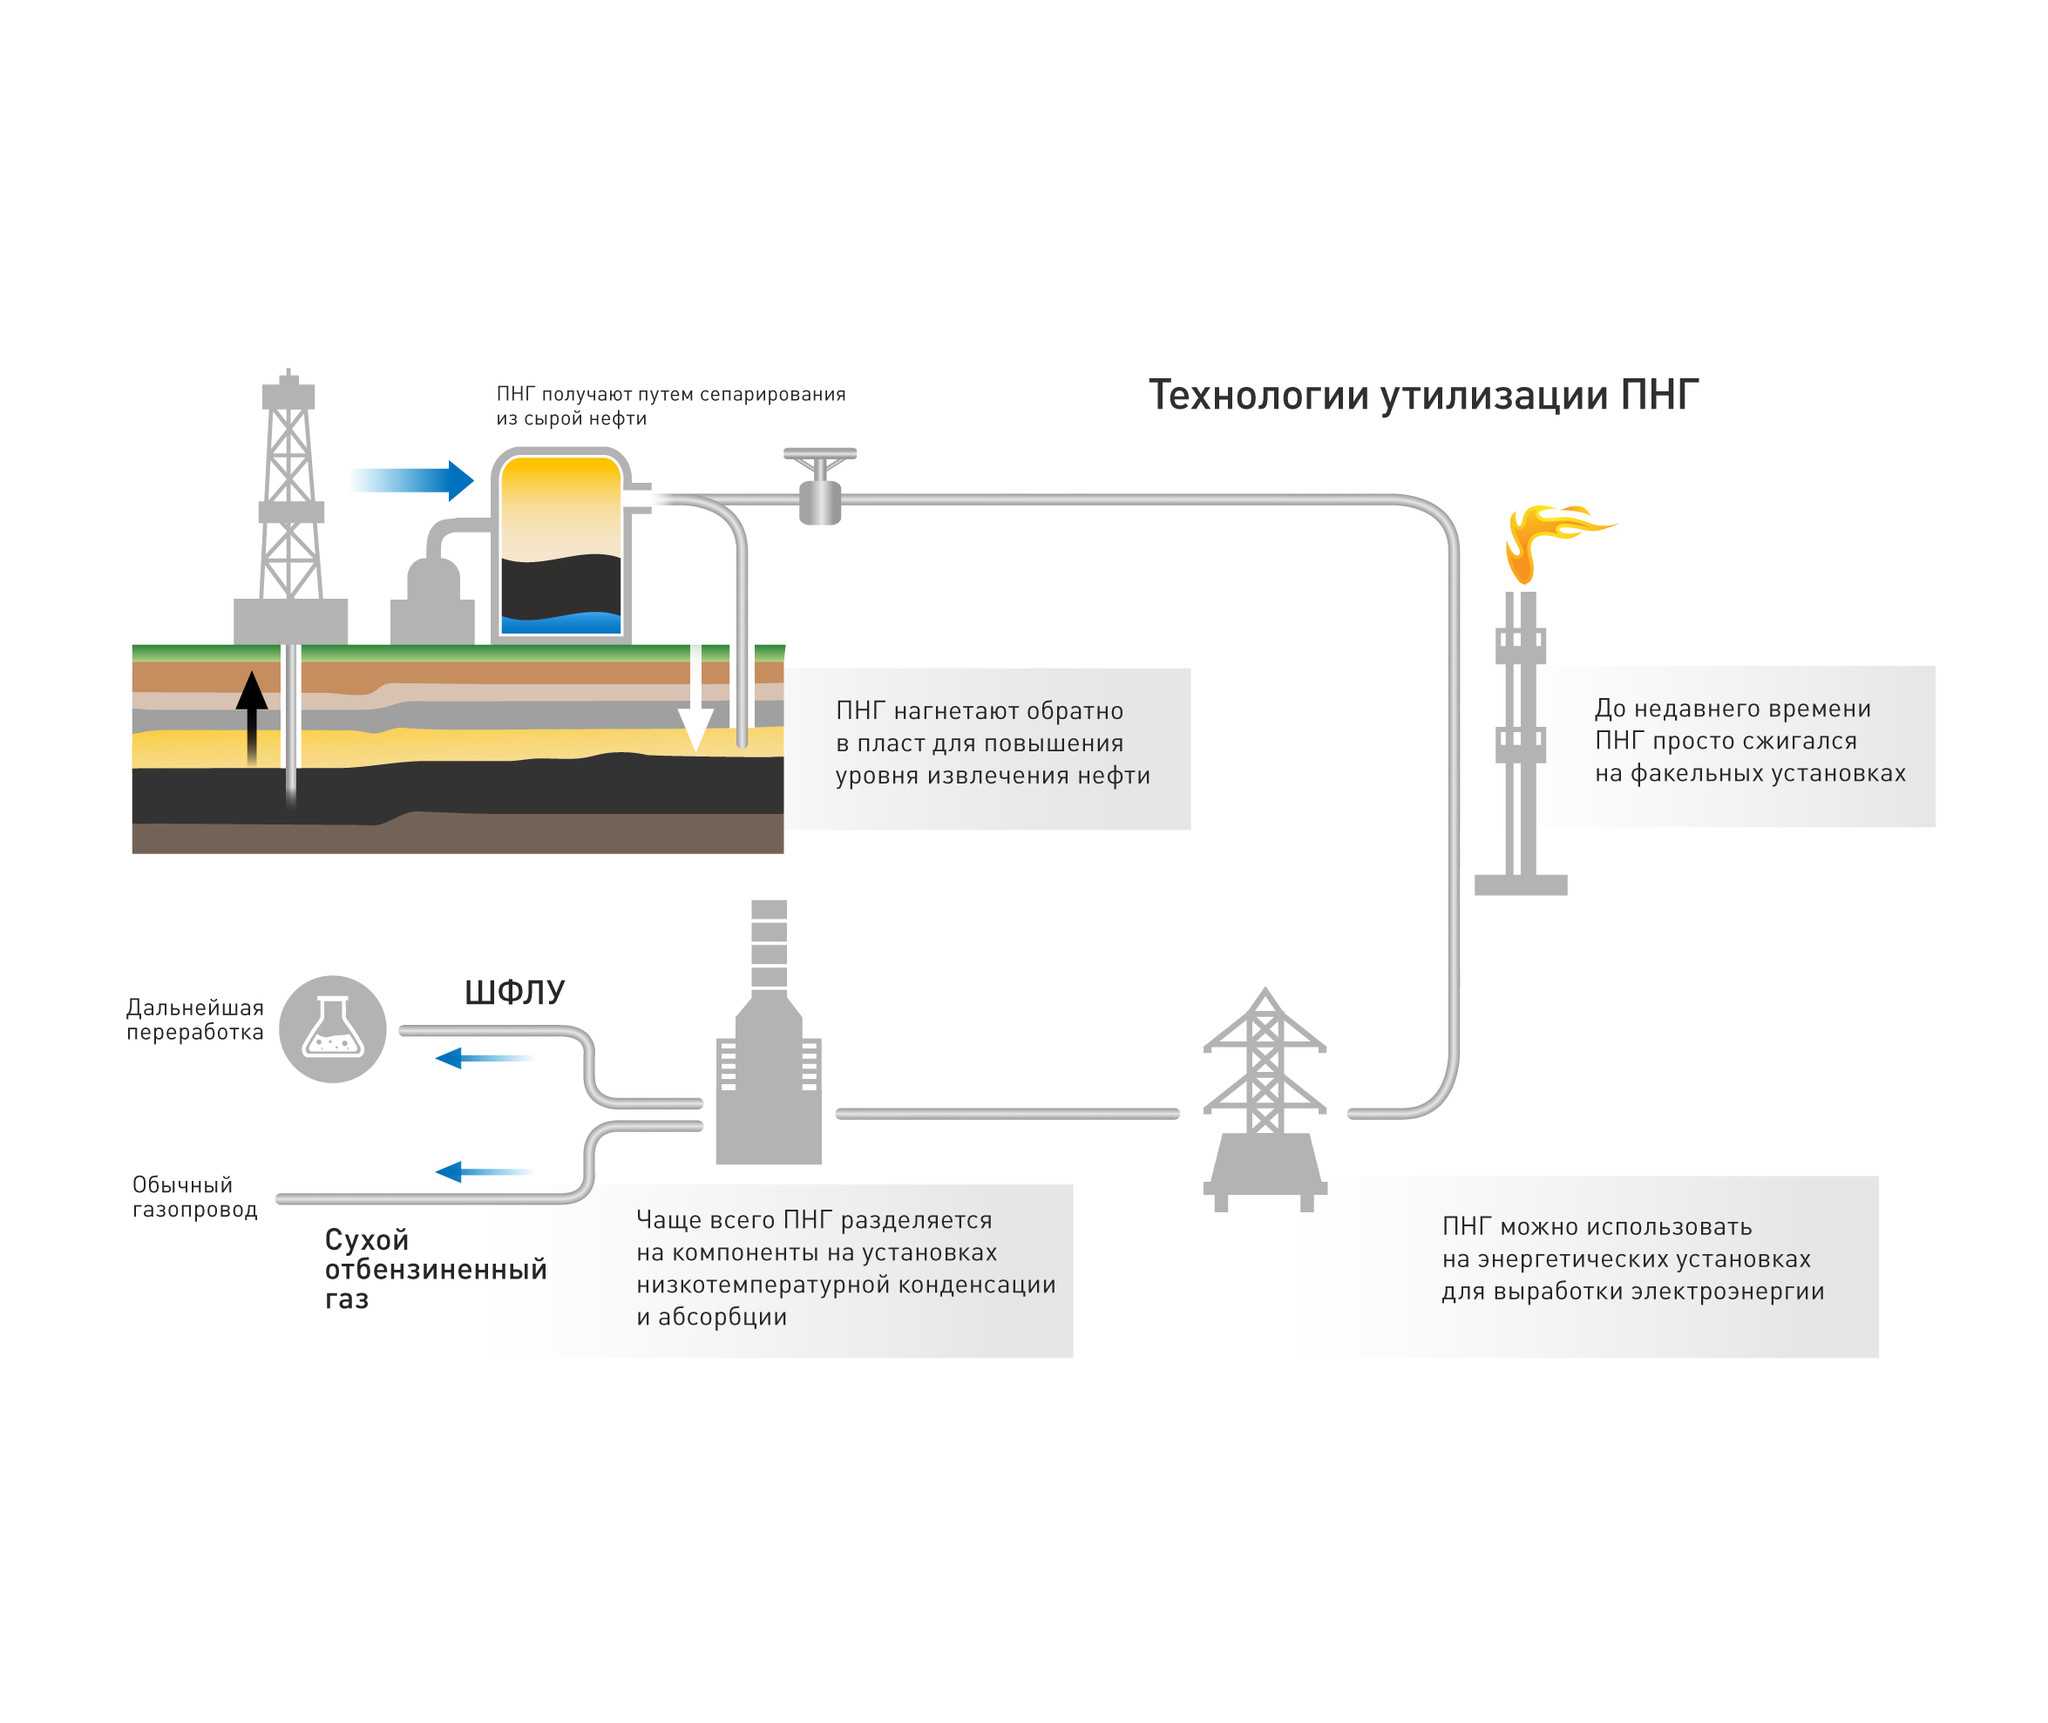 Ситуация с утилизацией попутного нефтяного газа и предлагаемые меры по переработке пнг